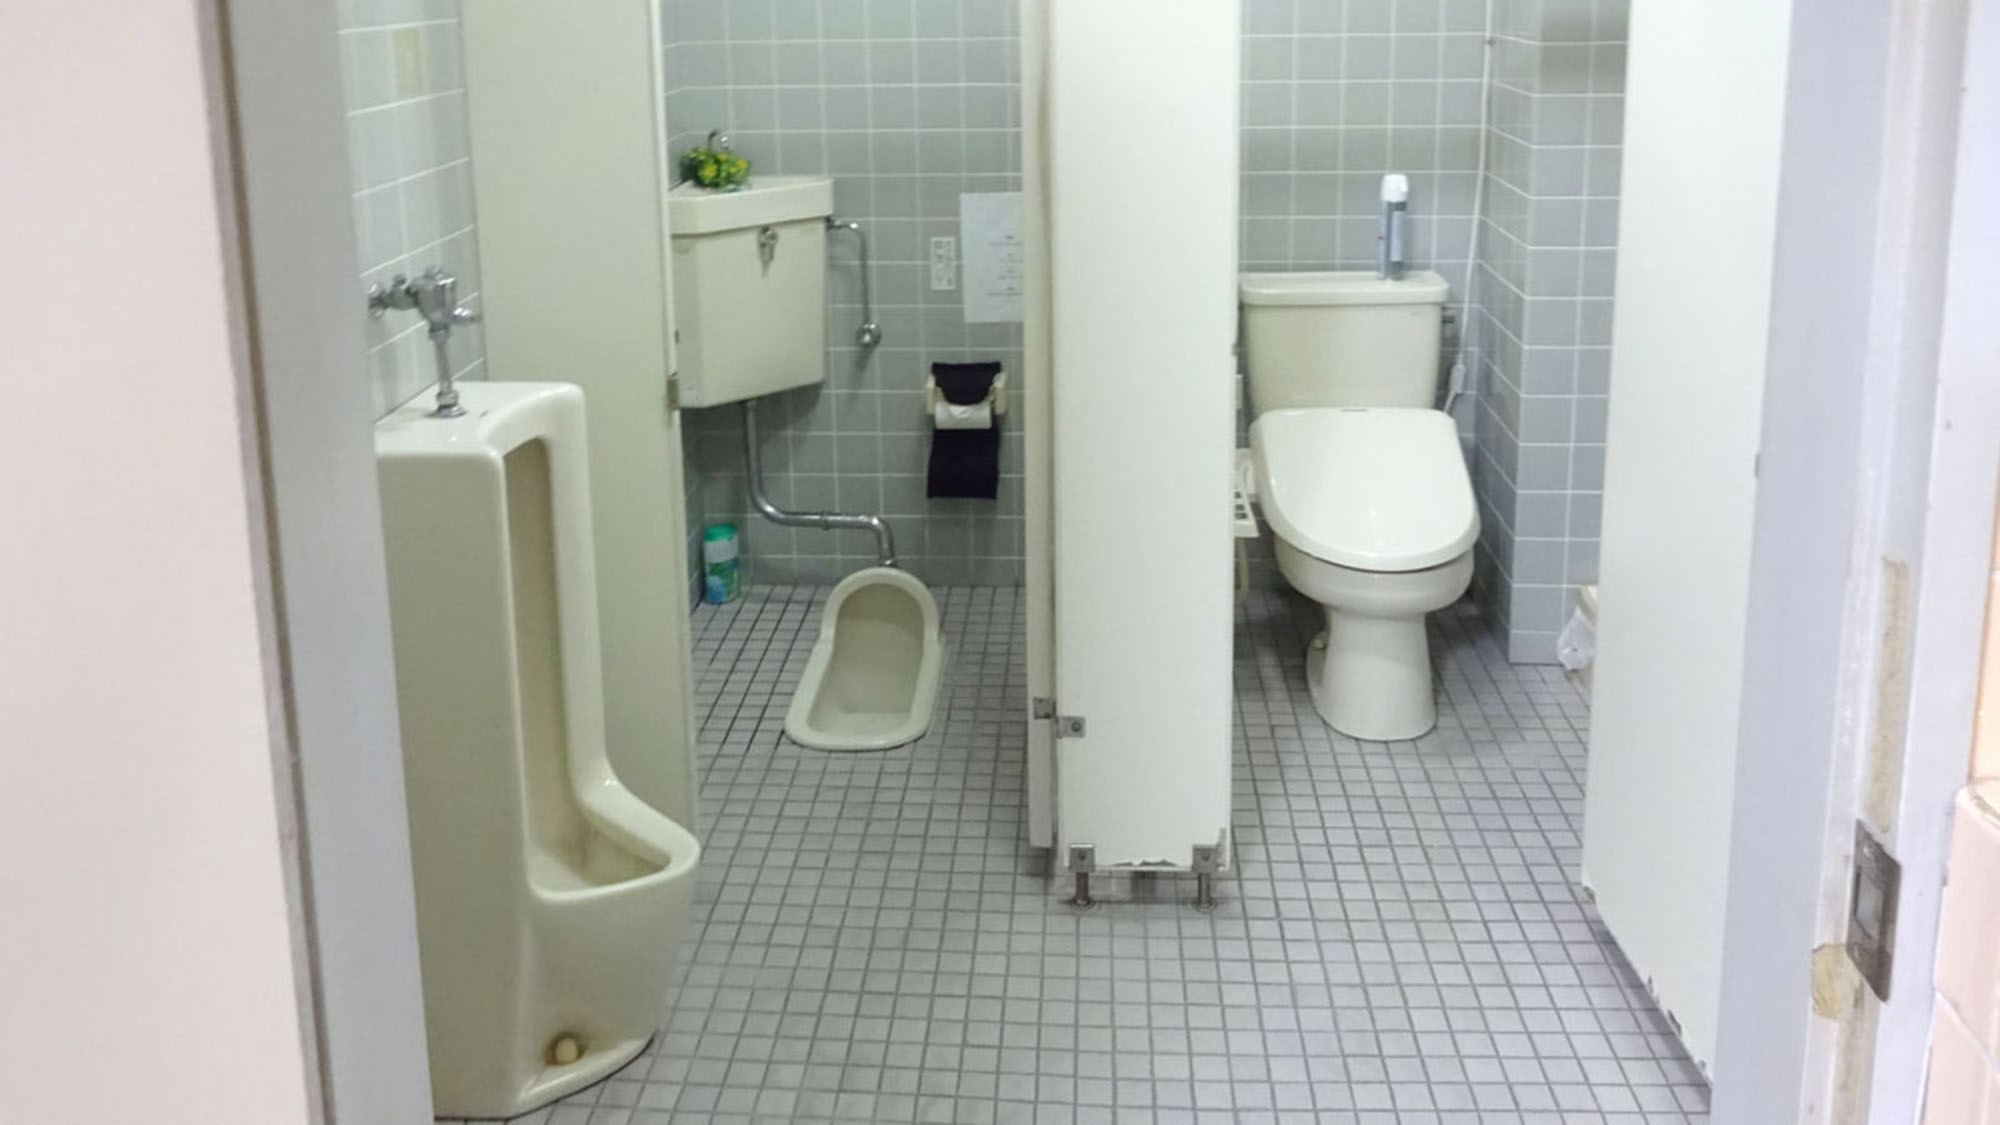 ・共同トイレは男性用・和式・洋式がございます